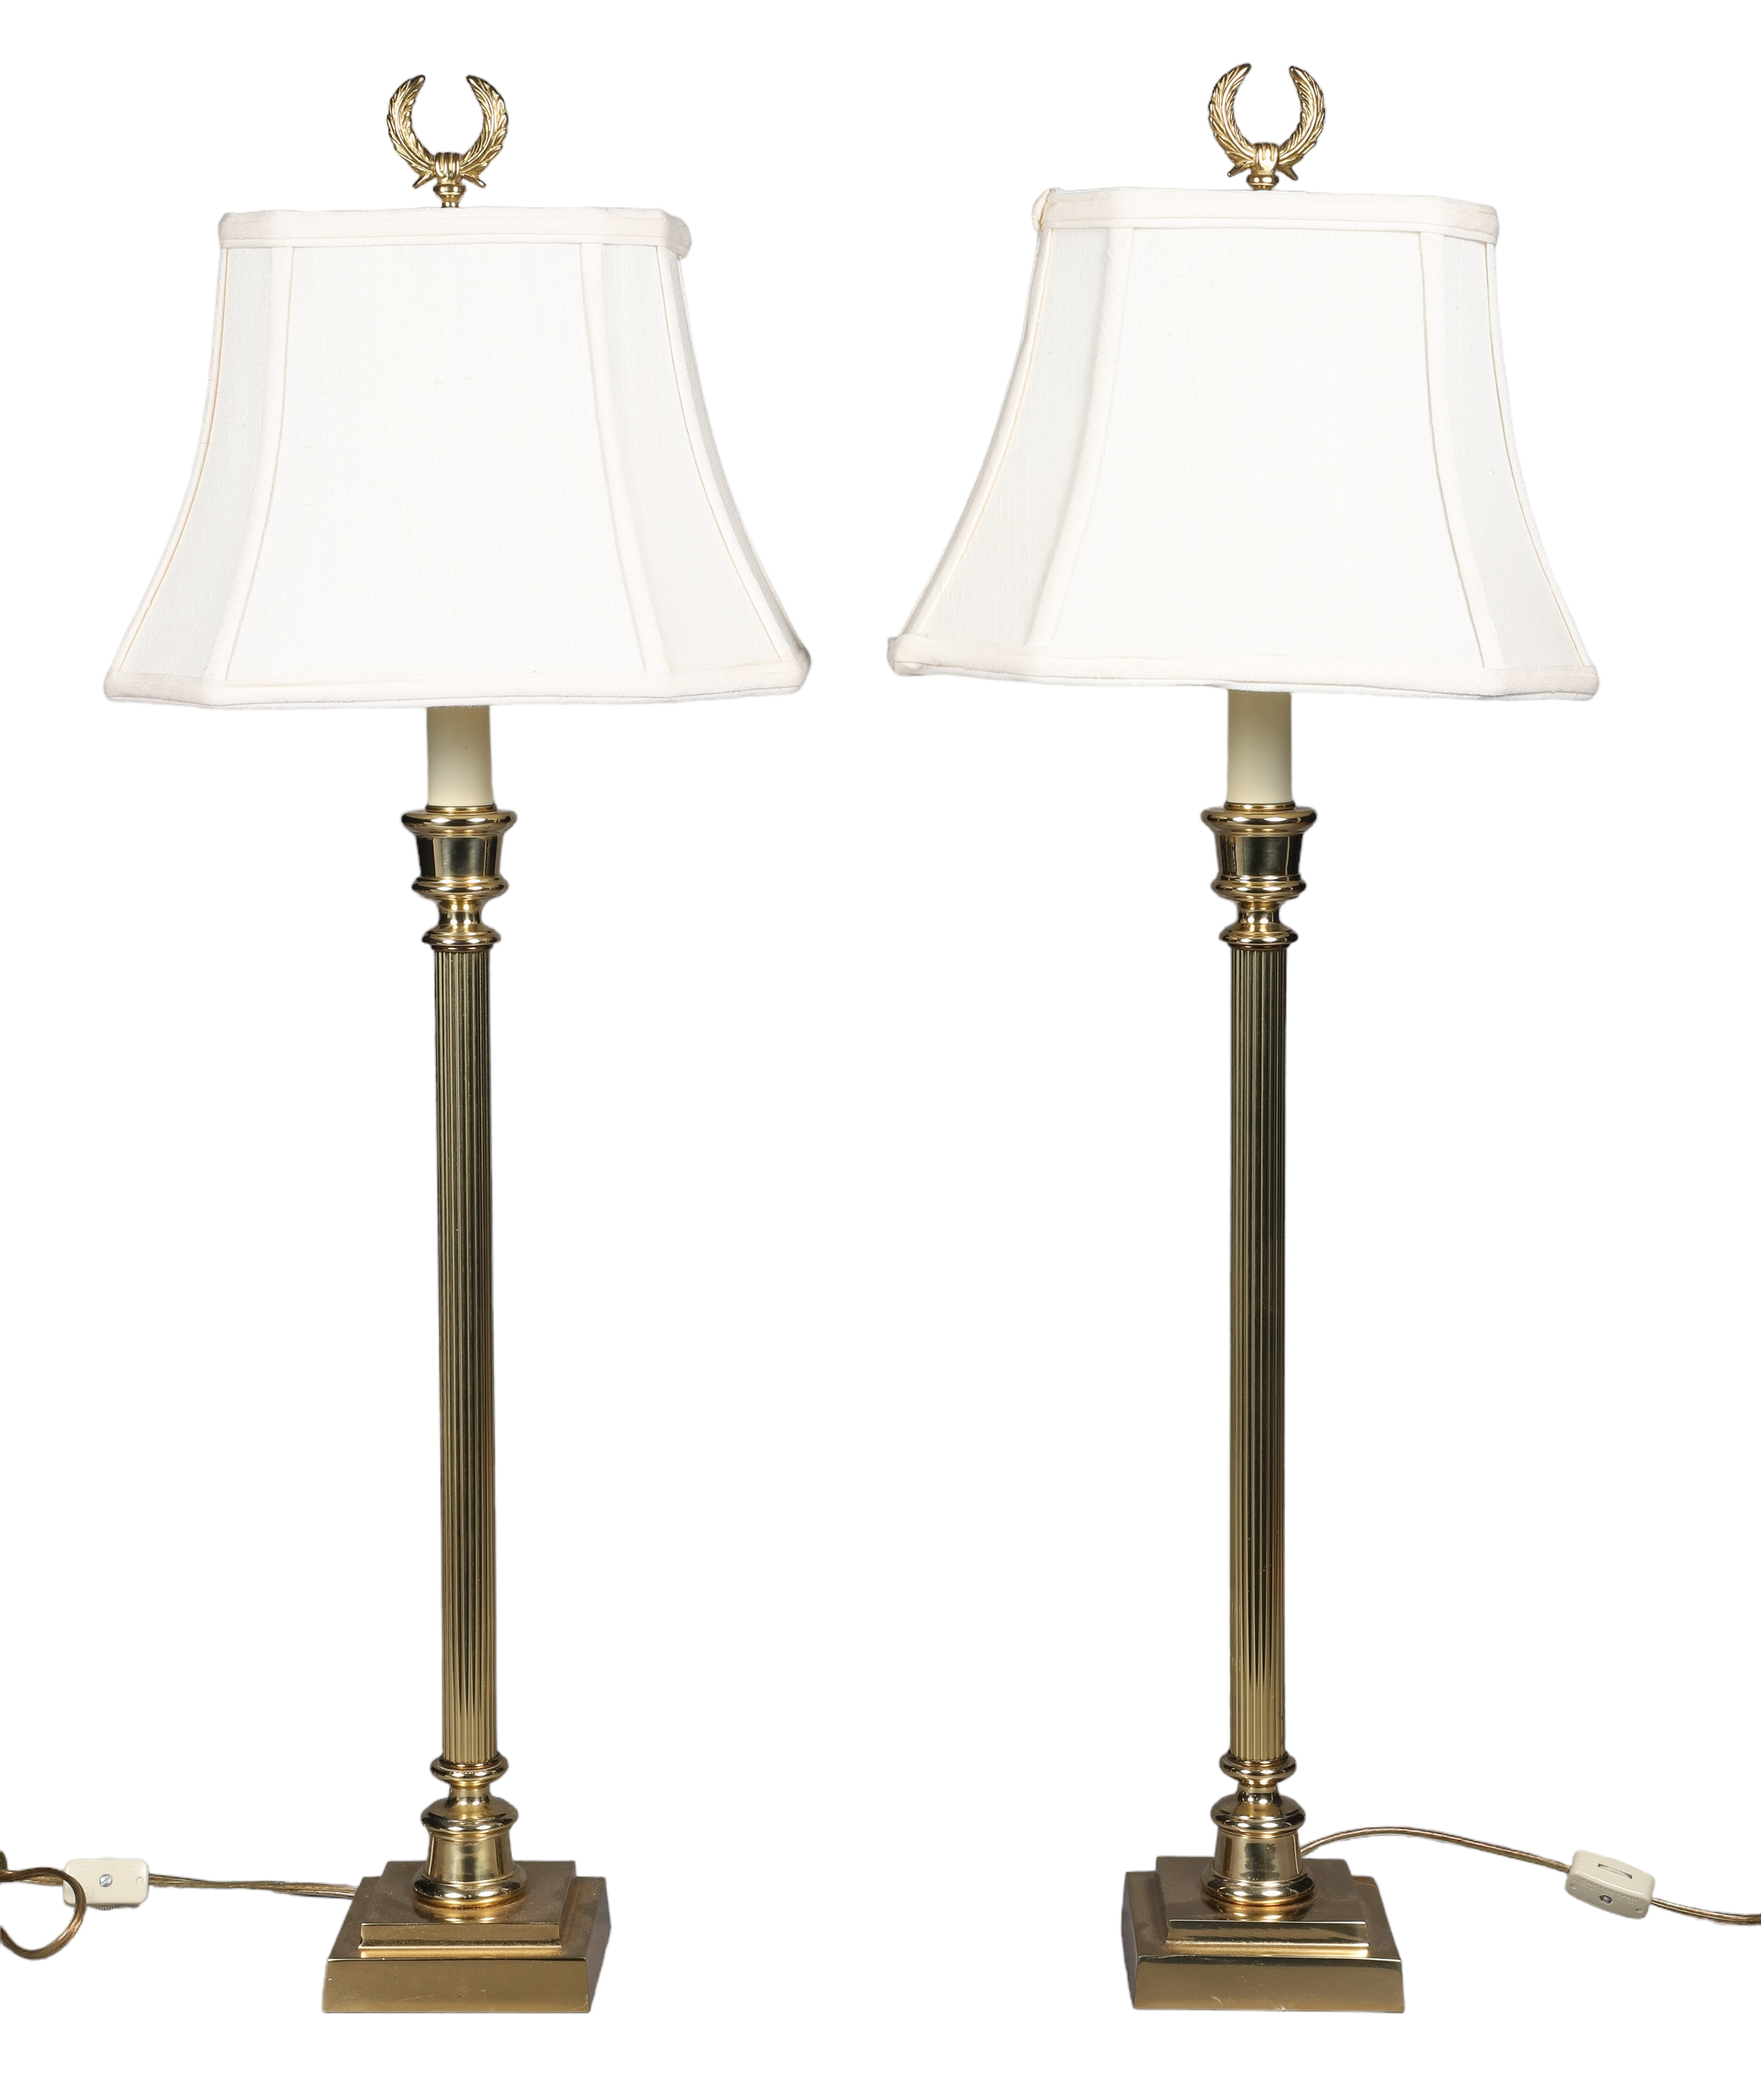 Brass column candlestick lamp pair,